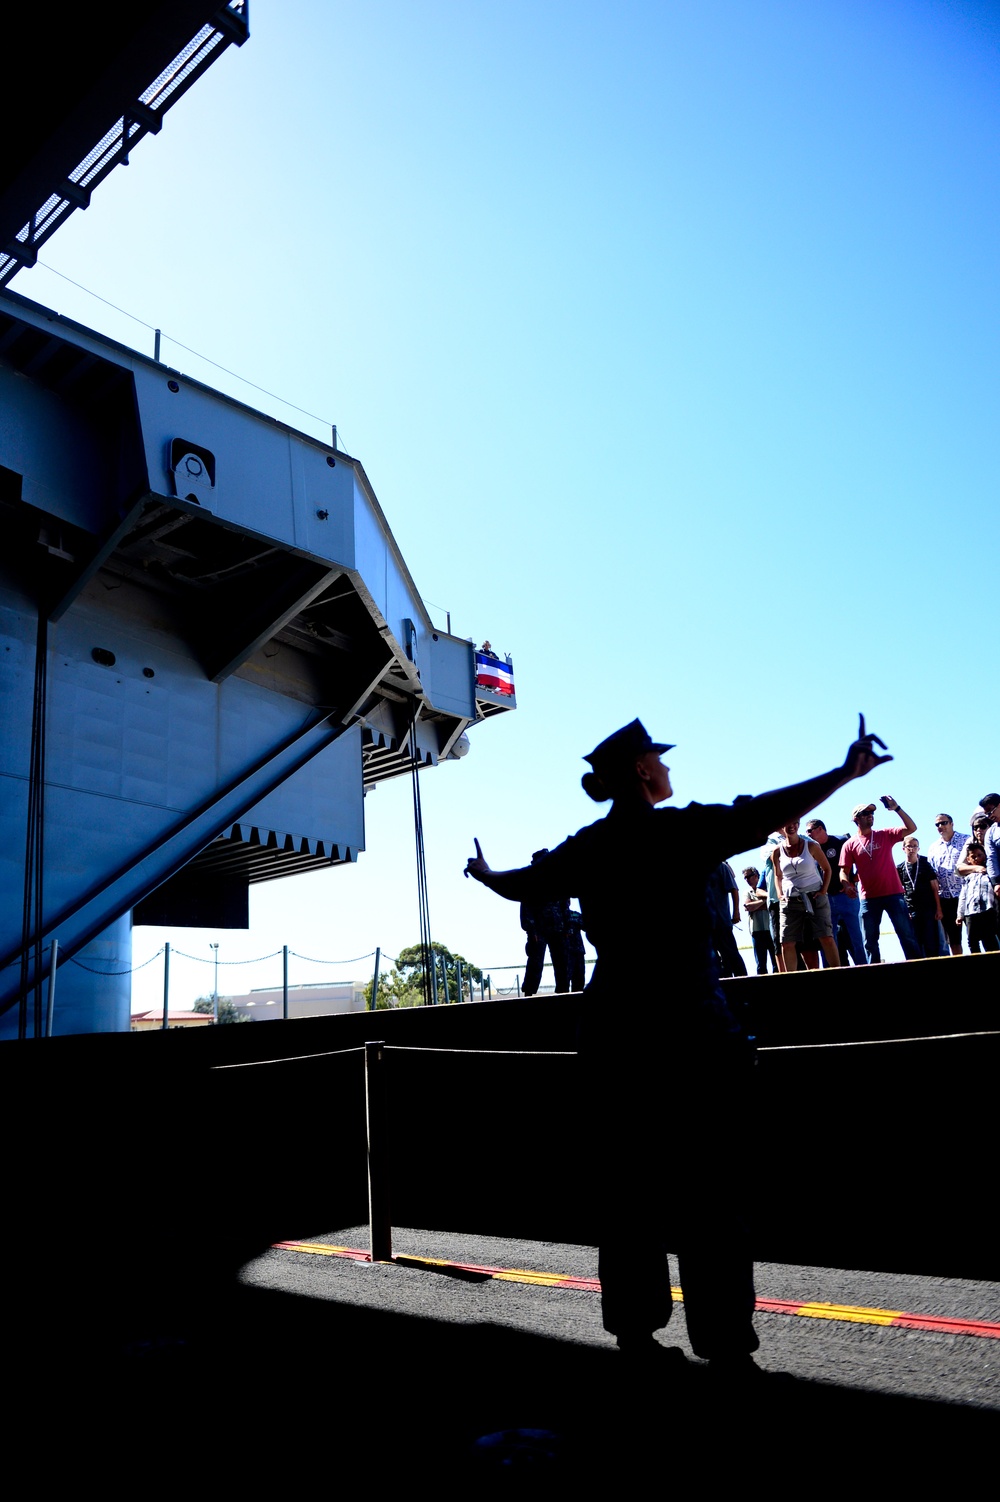 Guests visit USS Ronald Reagan (CVN 76)